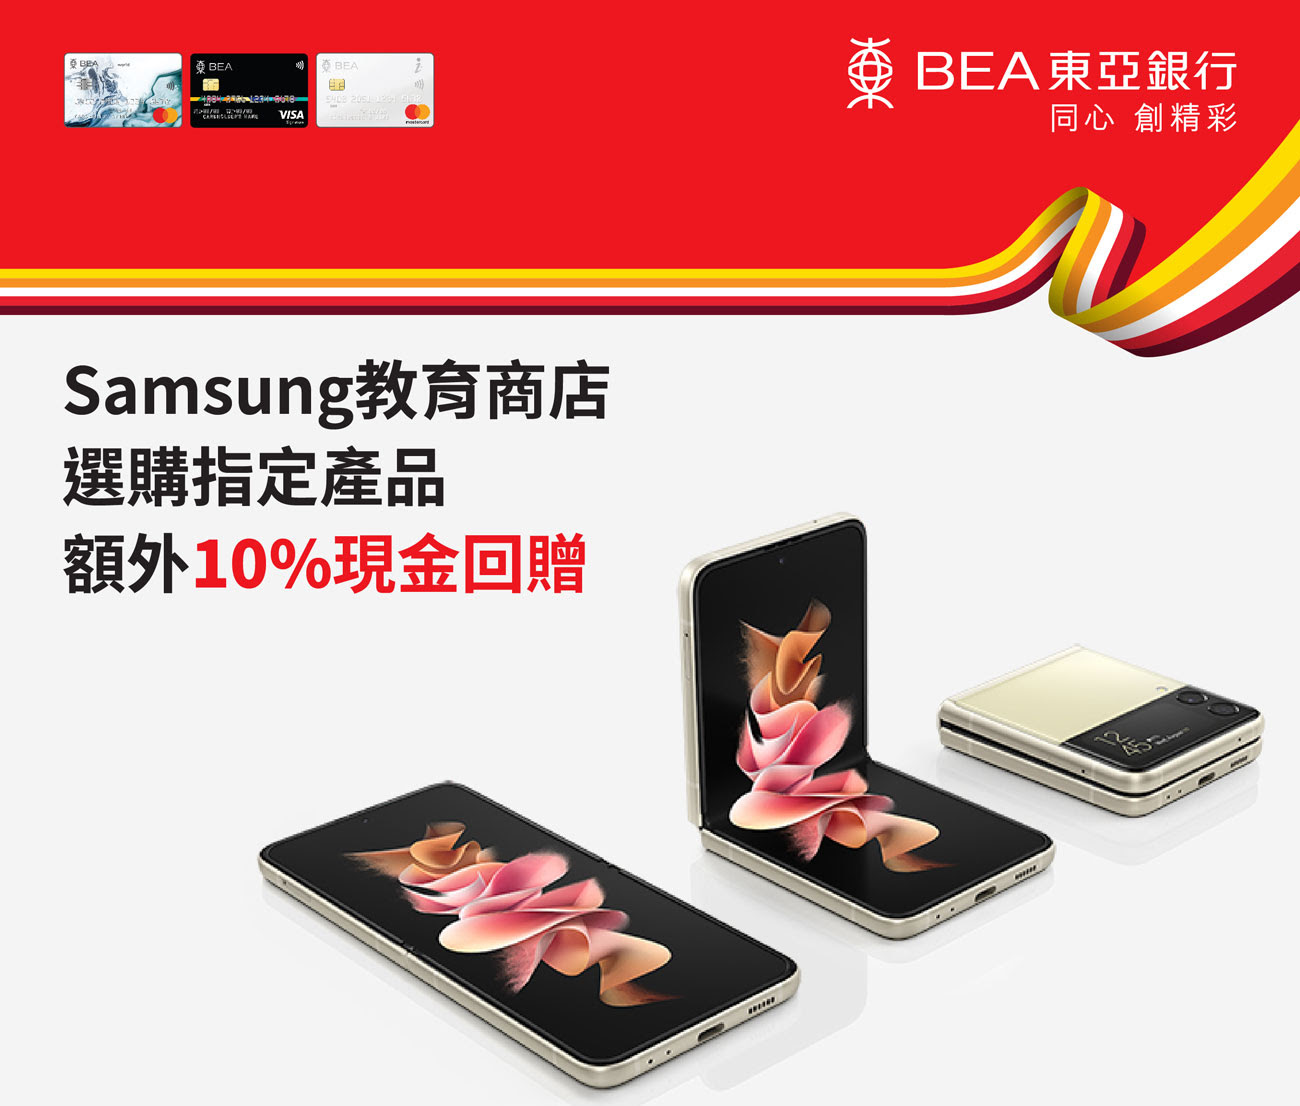 【東亞信用卡Samsung教育商店優惠】指定產品額外10%回贈！仲有精彩禮遇高達$2,500！